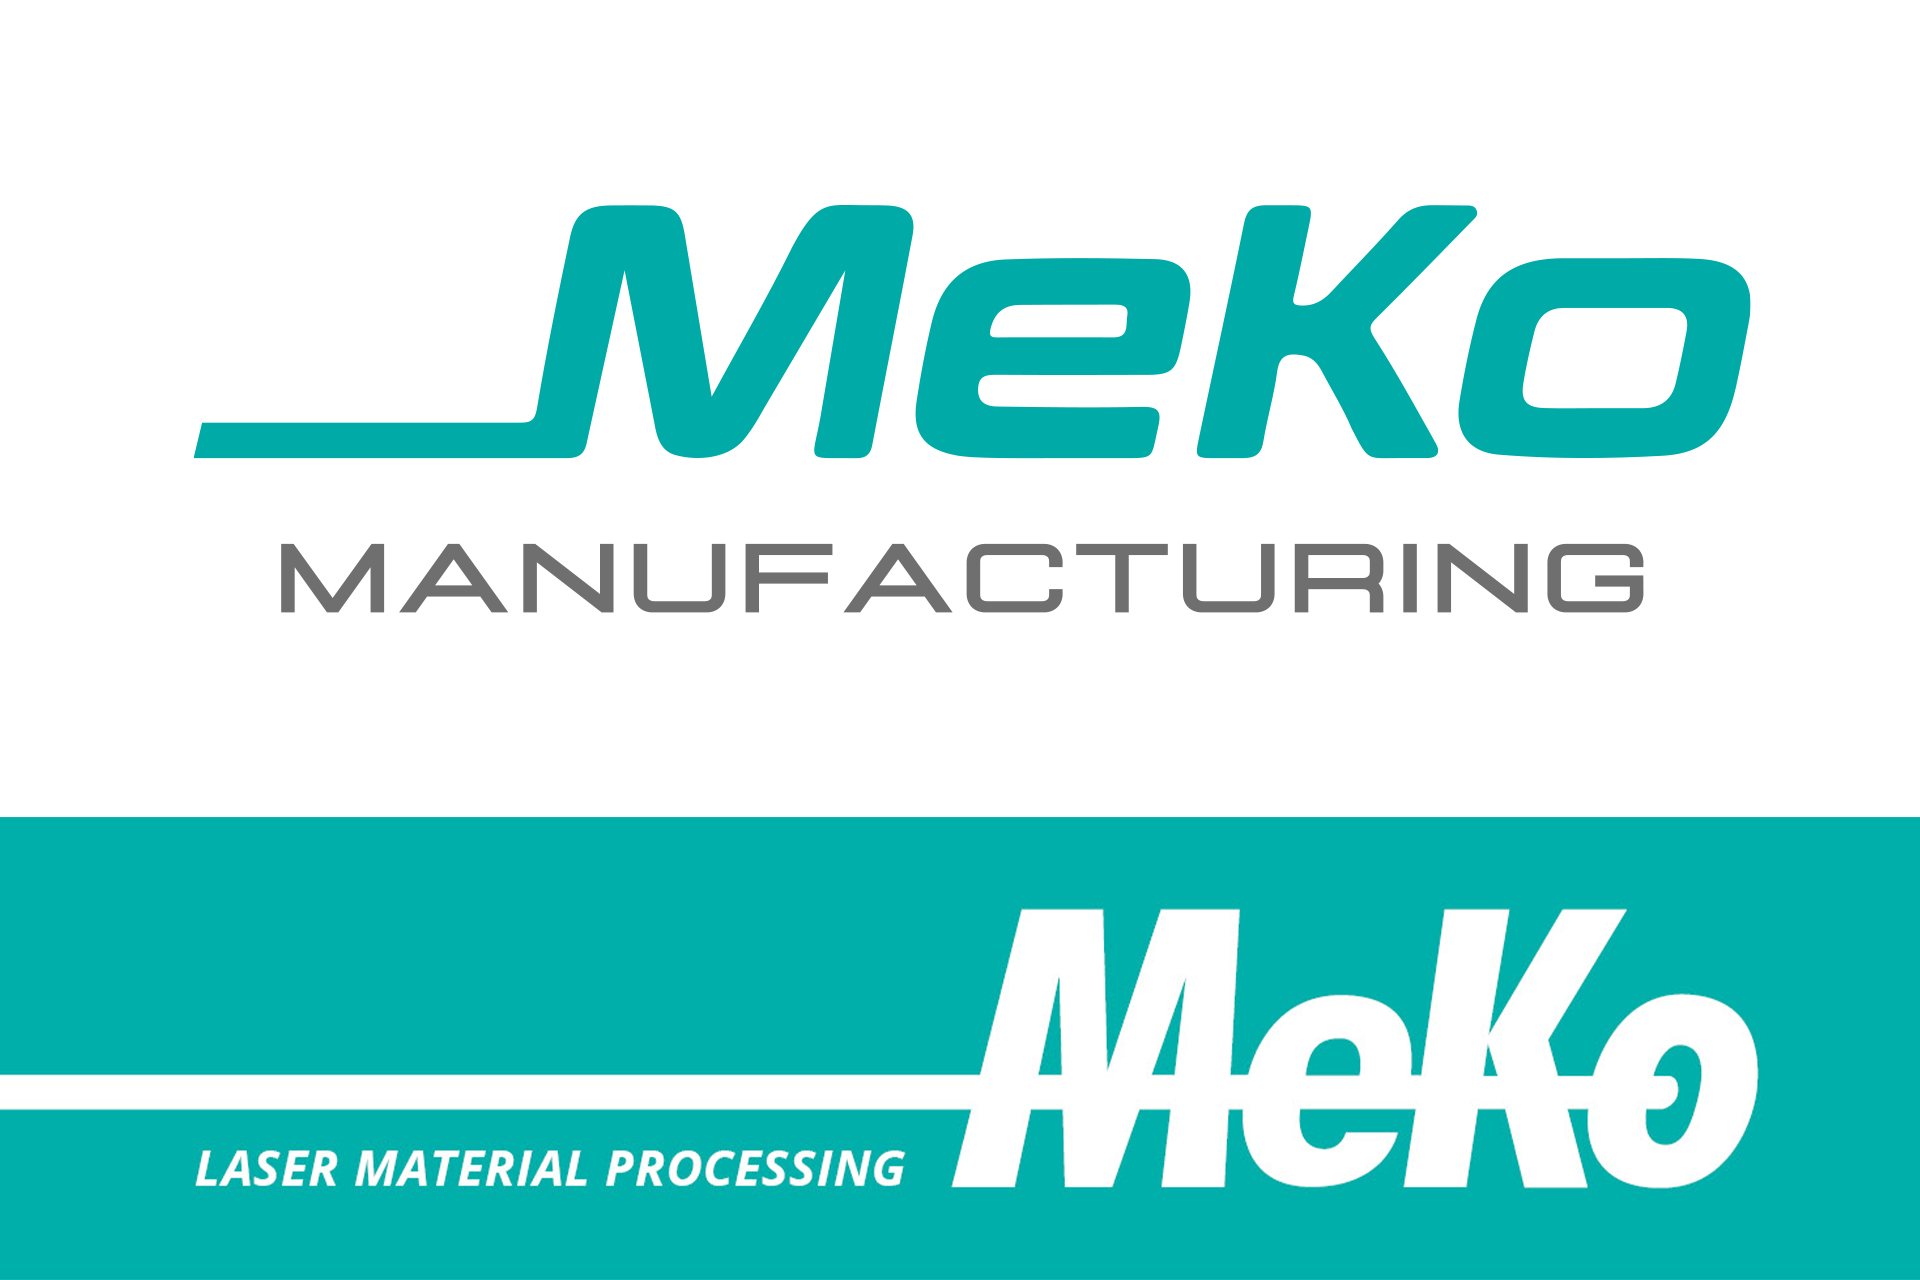 New and old MeKo logo